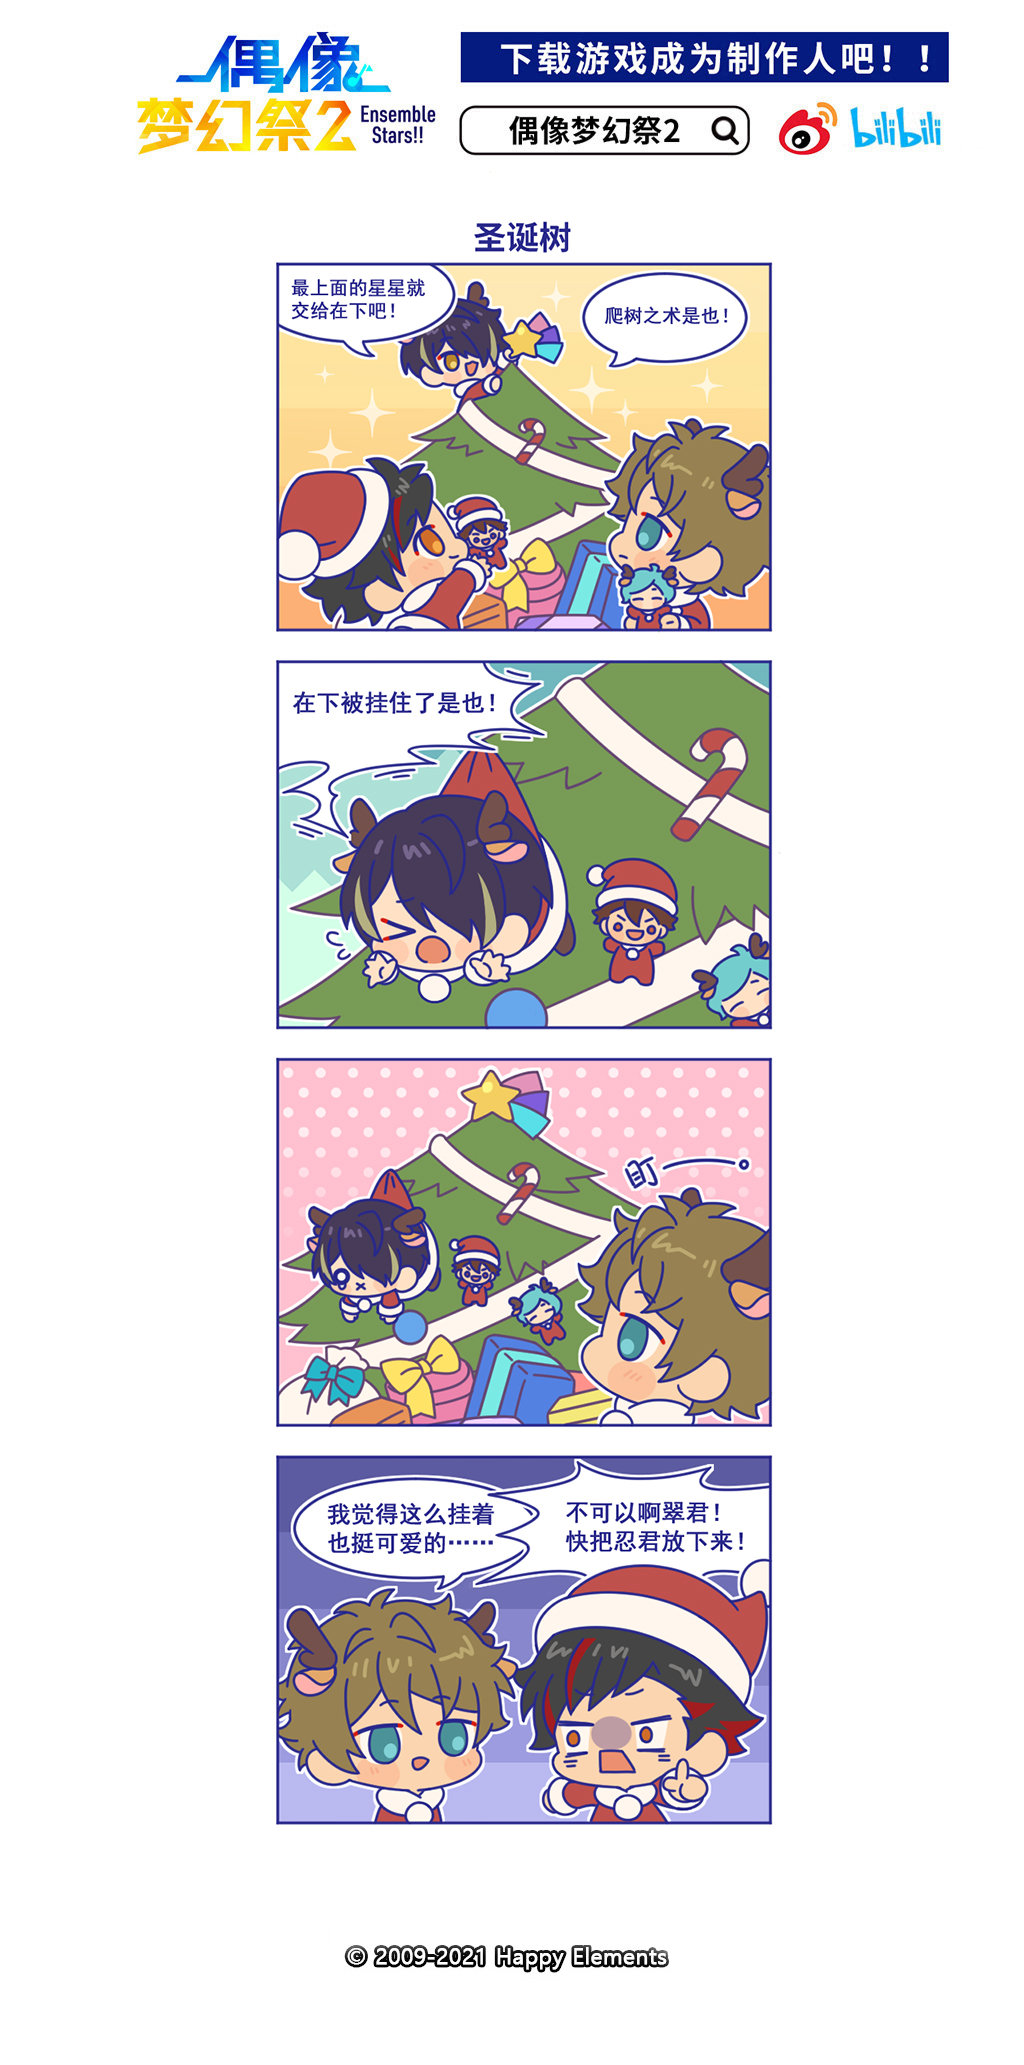 【漫画】官方四格漫画★ 59话「圣诞树」★